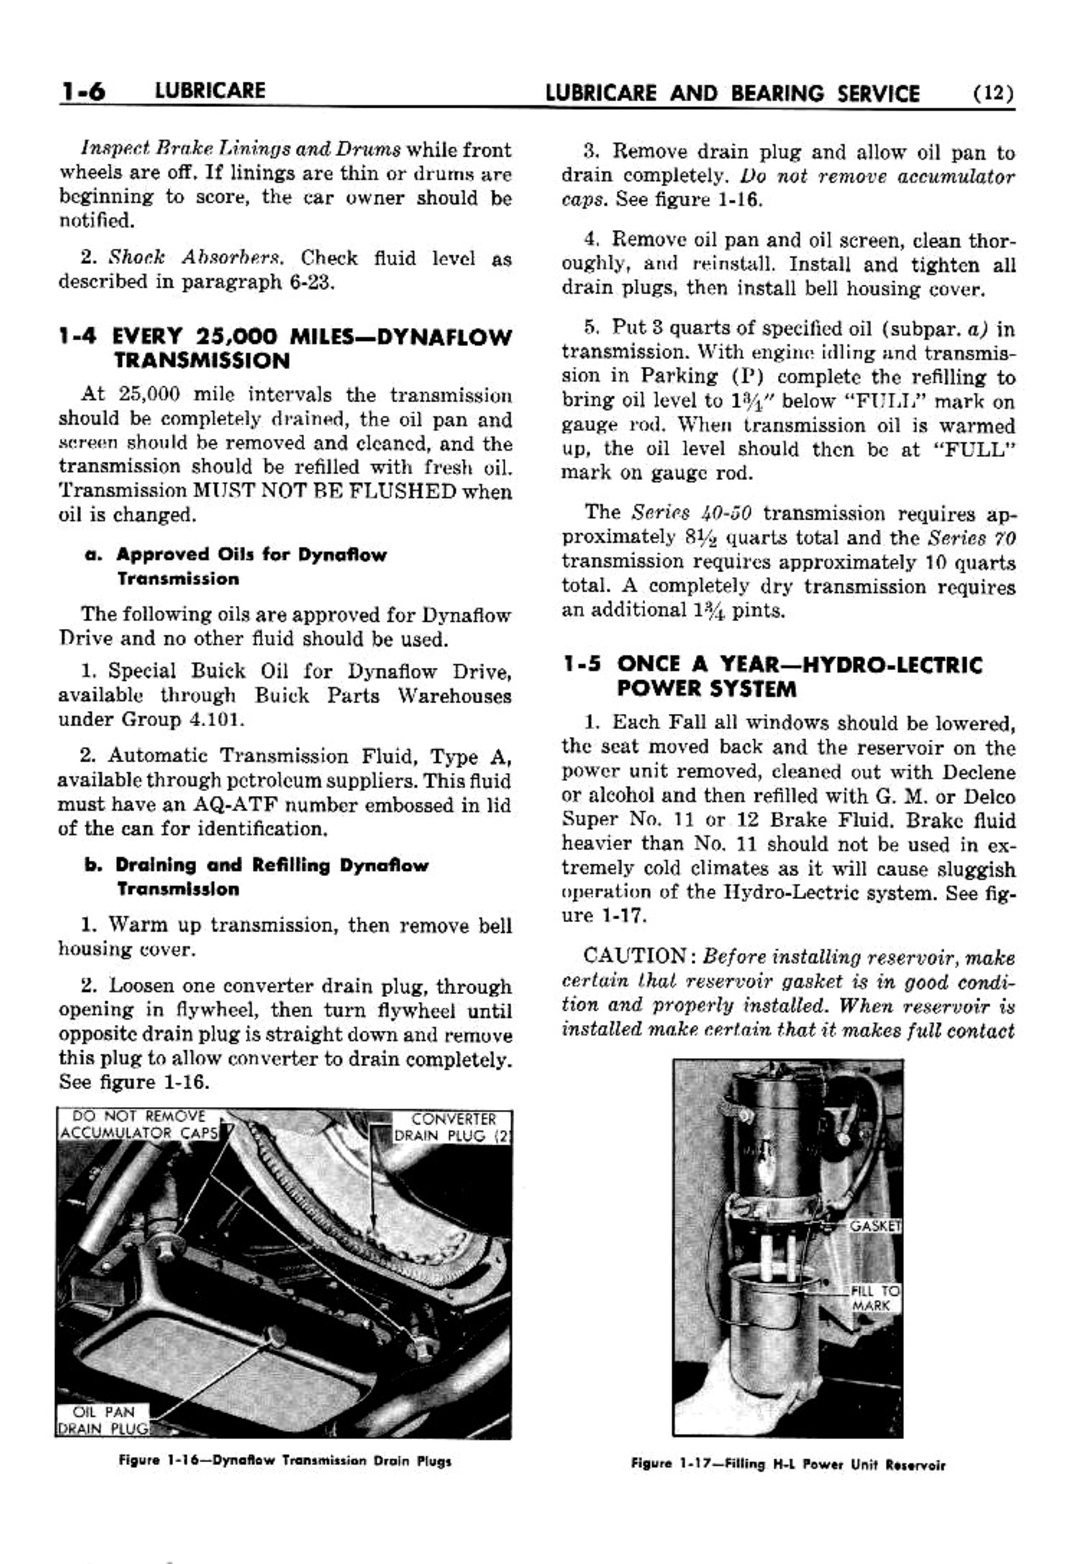 n_02 1952 Buick Shop Manual - Lubricare-006-006.jpg